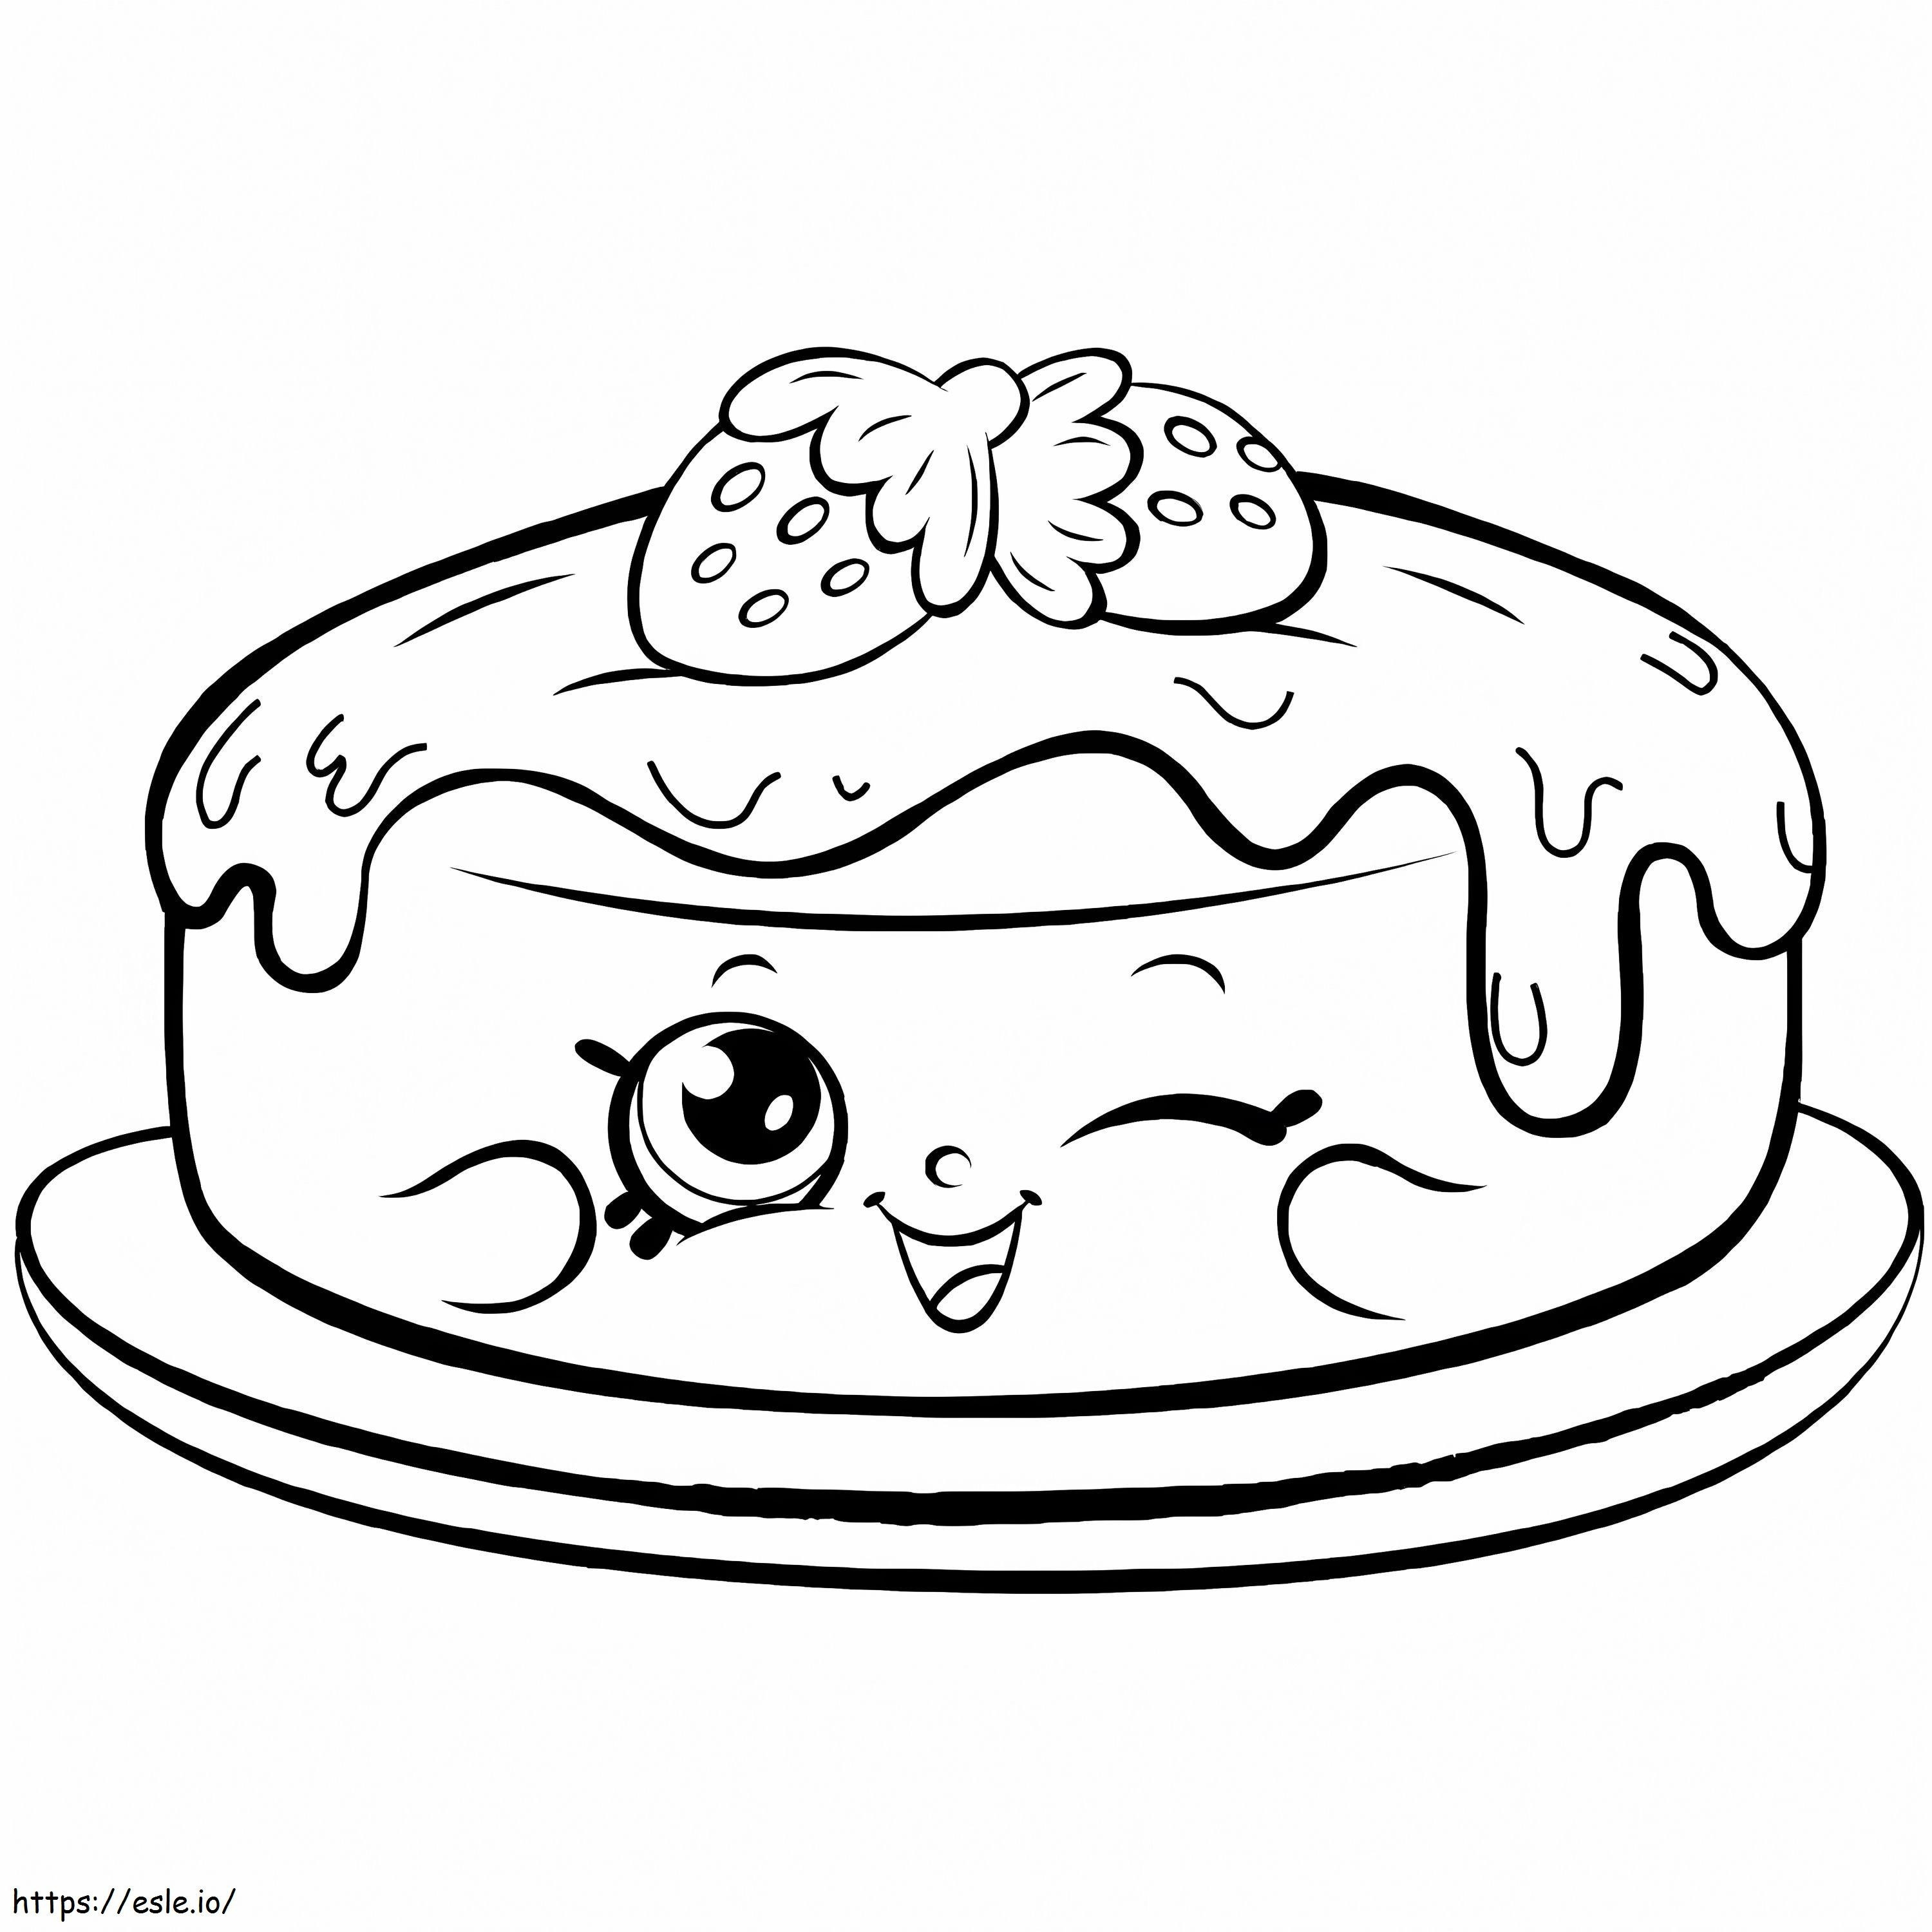 Coloriage Pancake Shopkin de Fran à imprimer dessin